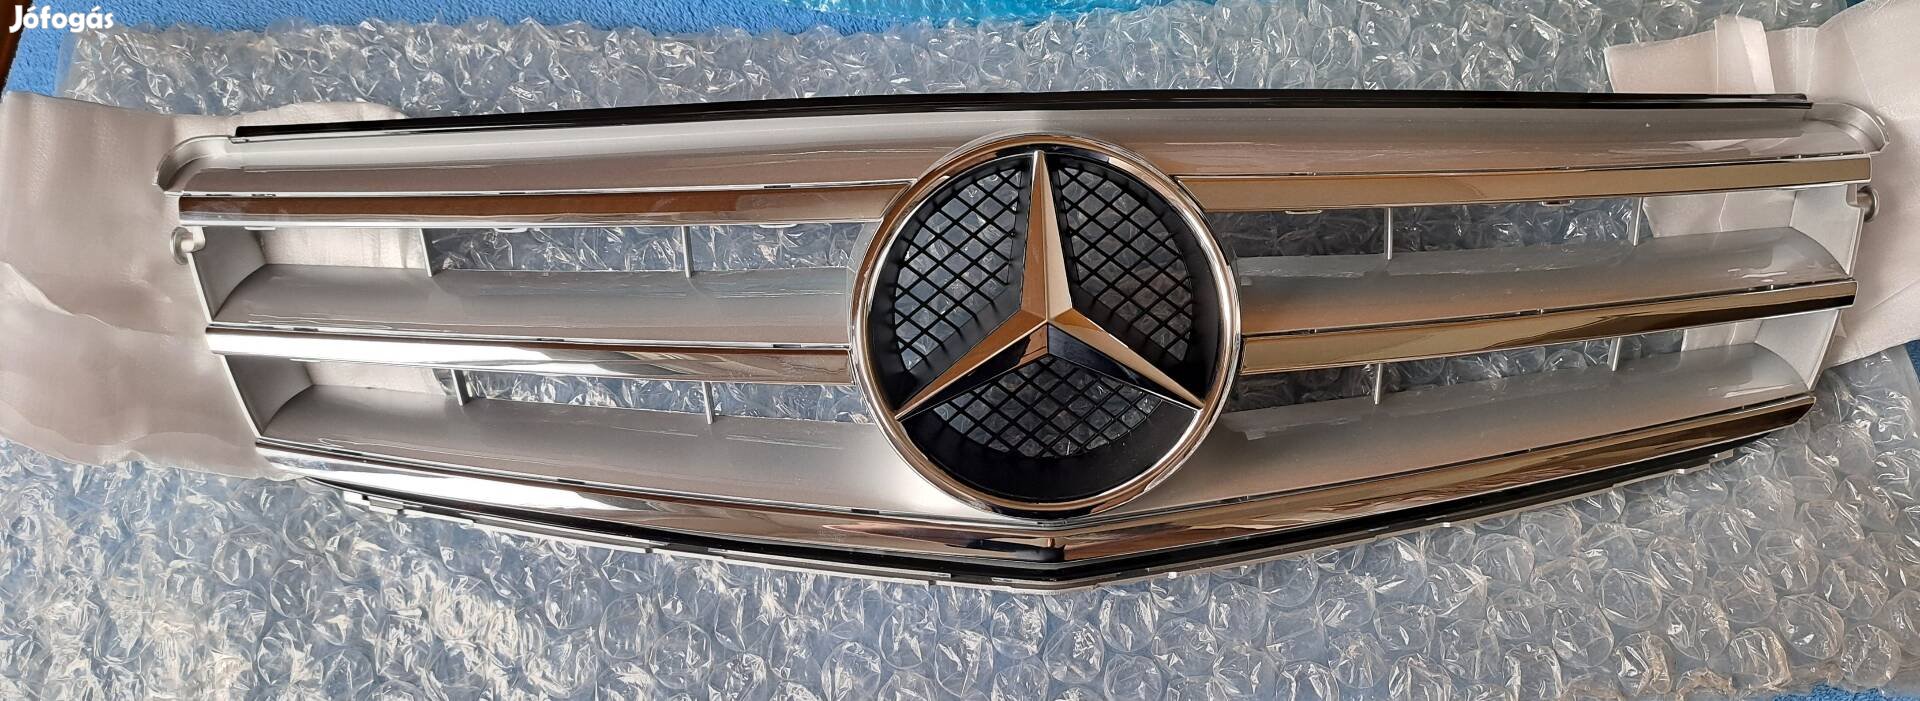 Mercedes W204 Új hűtőrács díszrács